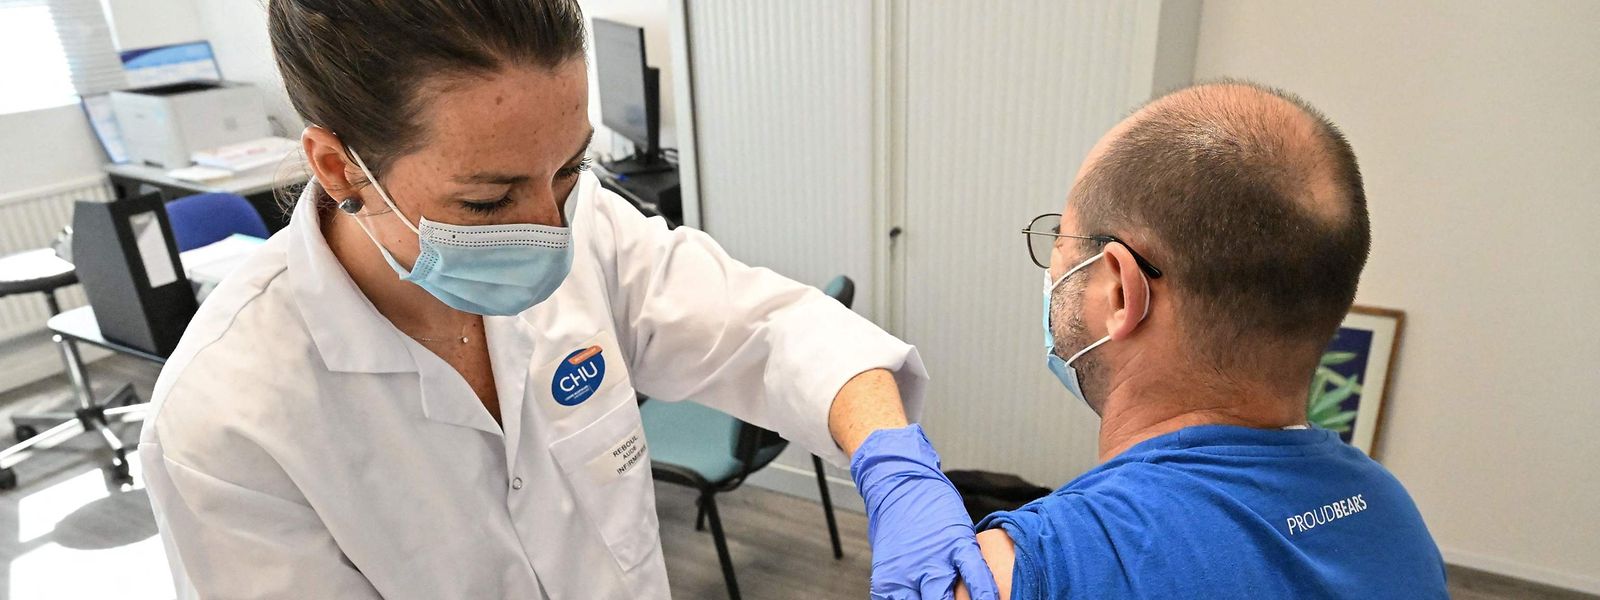 Sur son site dédié, la Wallonie annonce ainsi que «la vaccination reste la meilleure protection contre les formes graves de Covid-19 et réduit les risques d'hospitalisation».